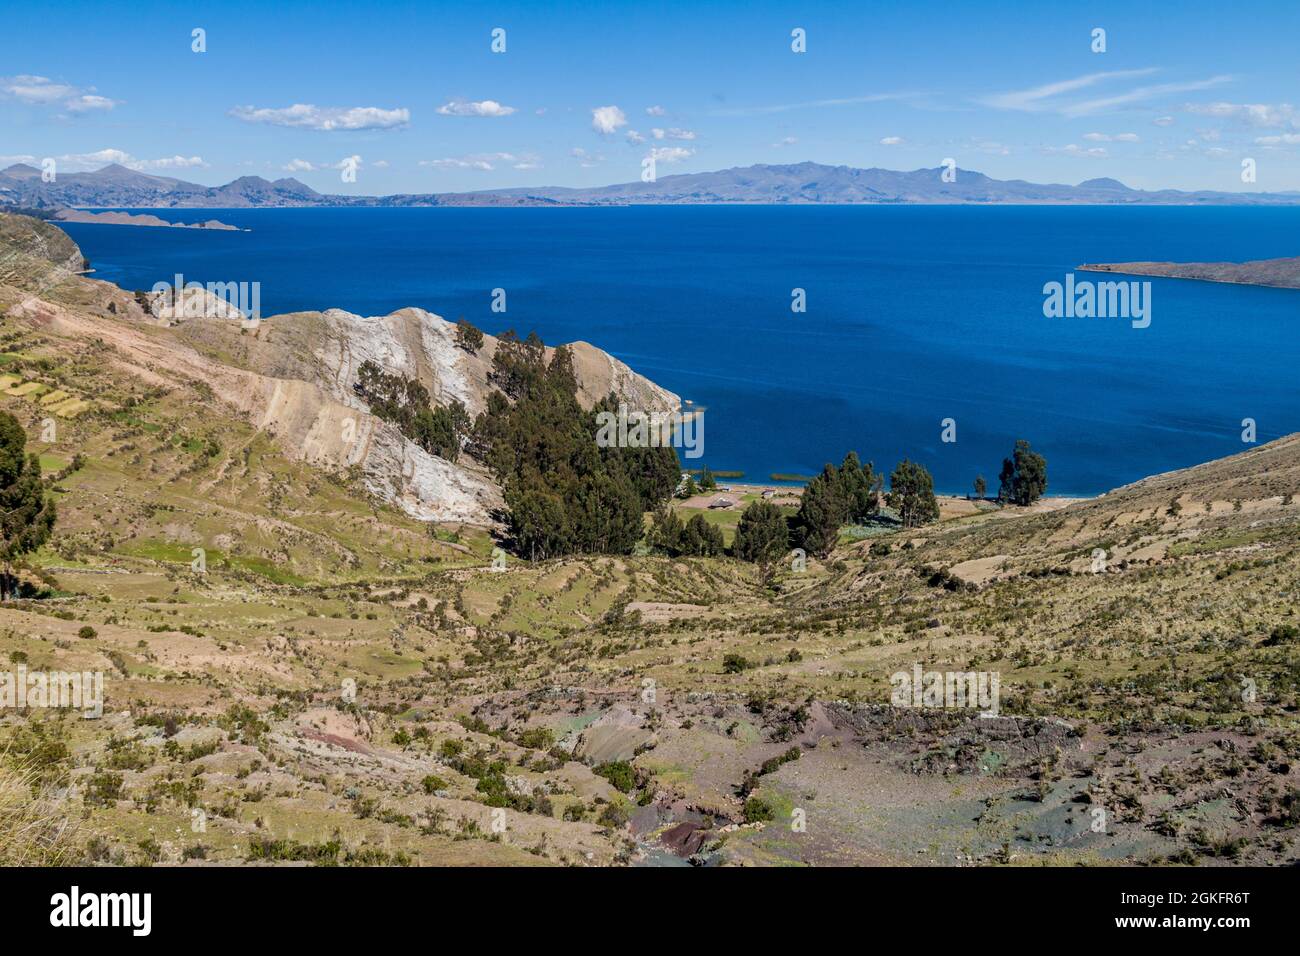 Isla del Sol (Island of the Sun) in Titicaca lake, Bolivia Stock Photo